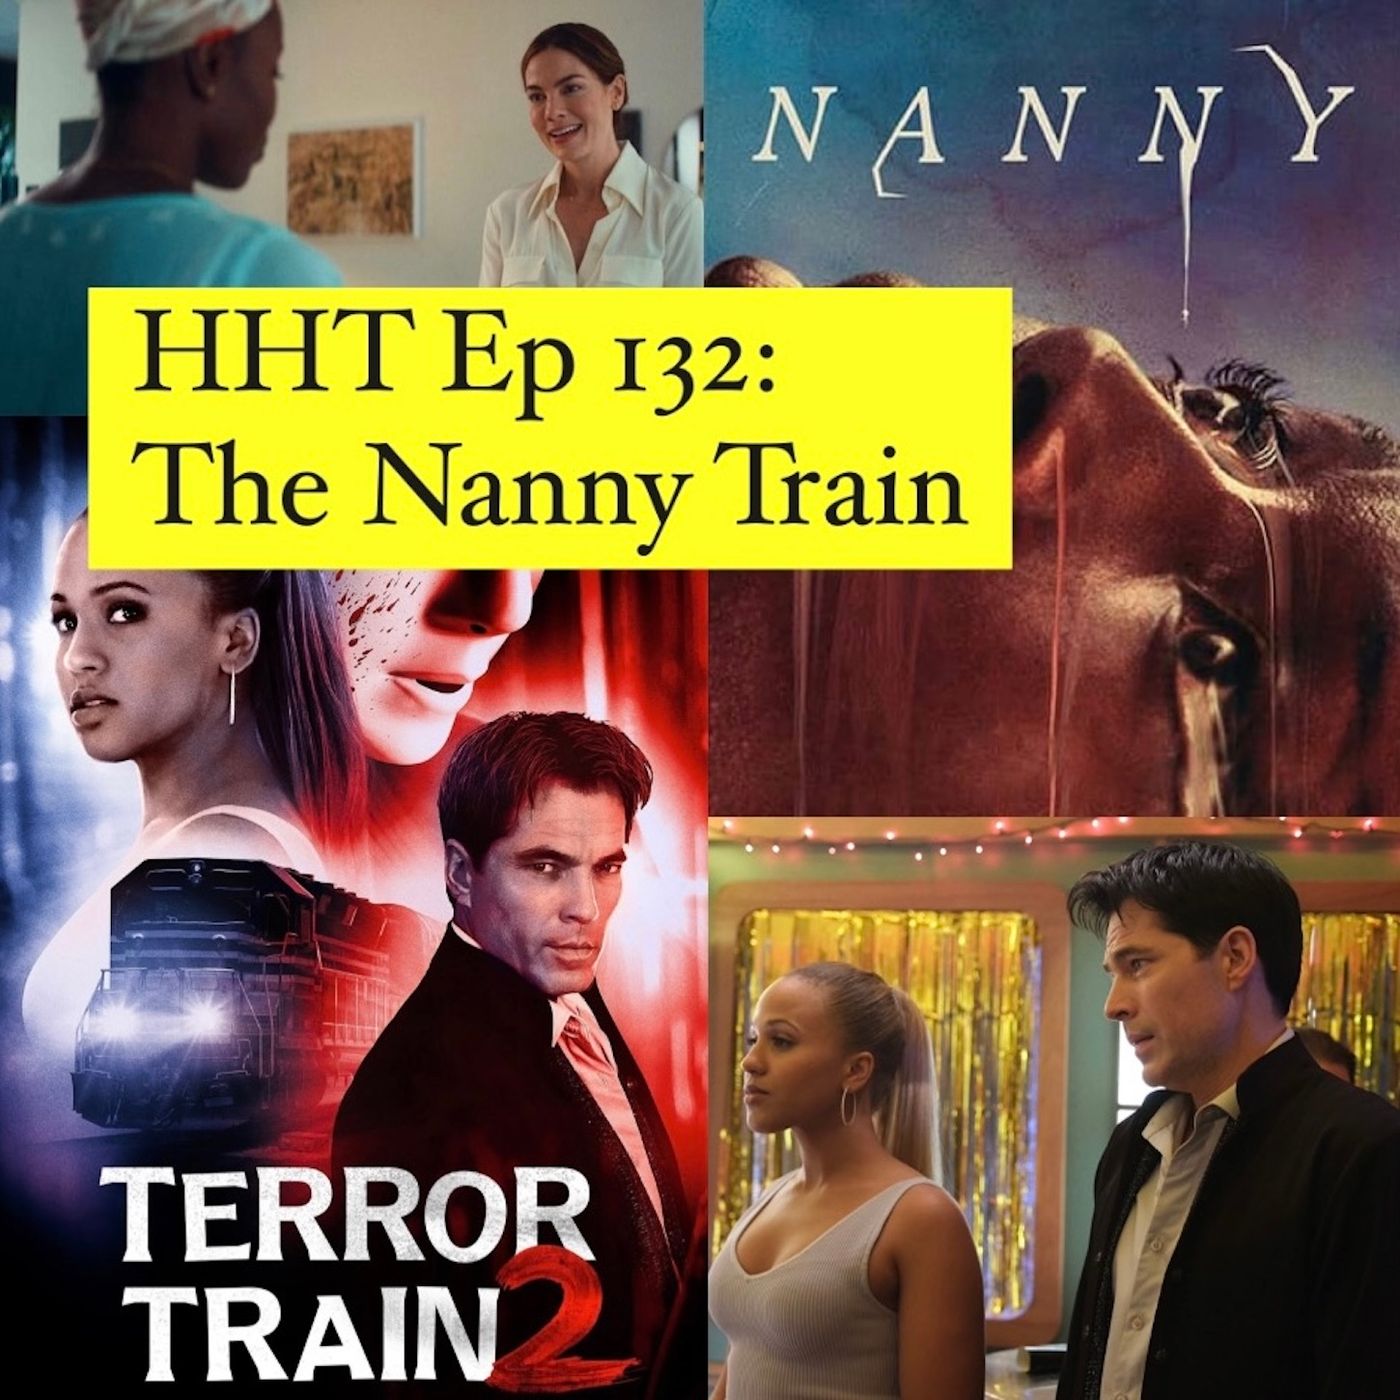 Ep 132: The Nanny Train